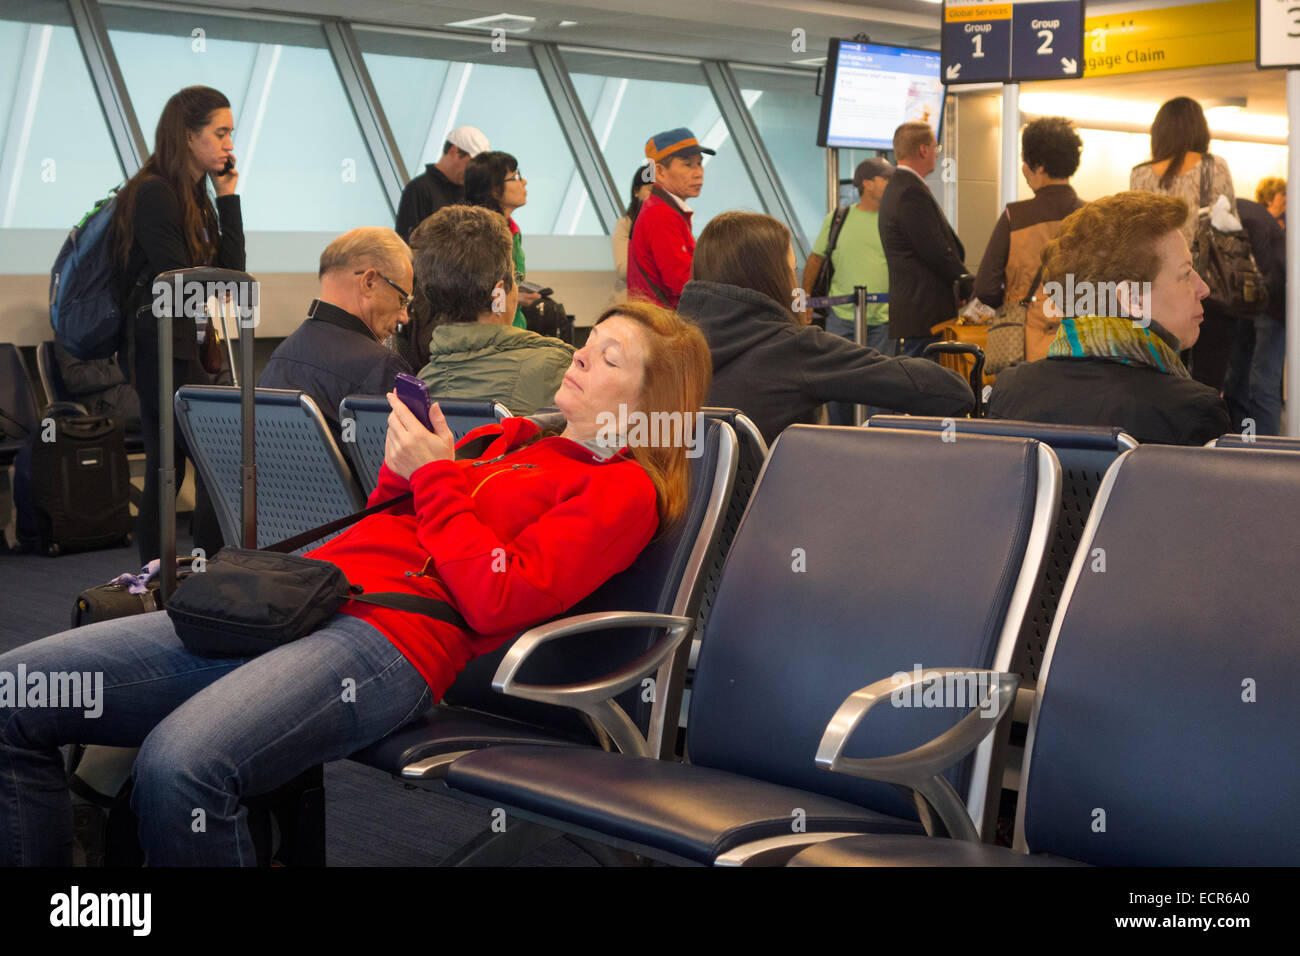 passengers waiting in JFK airport terminal Stock Photo